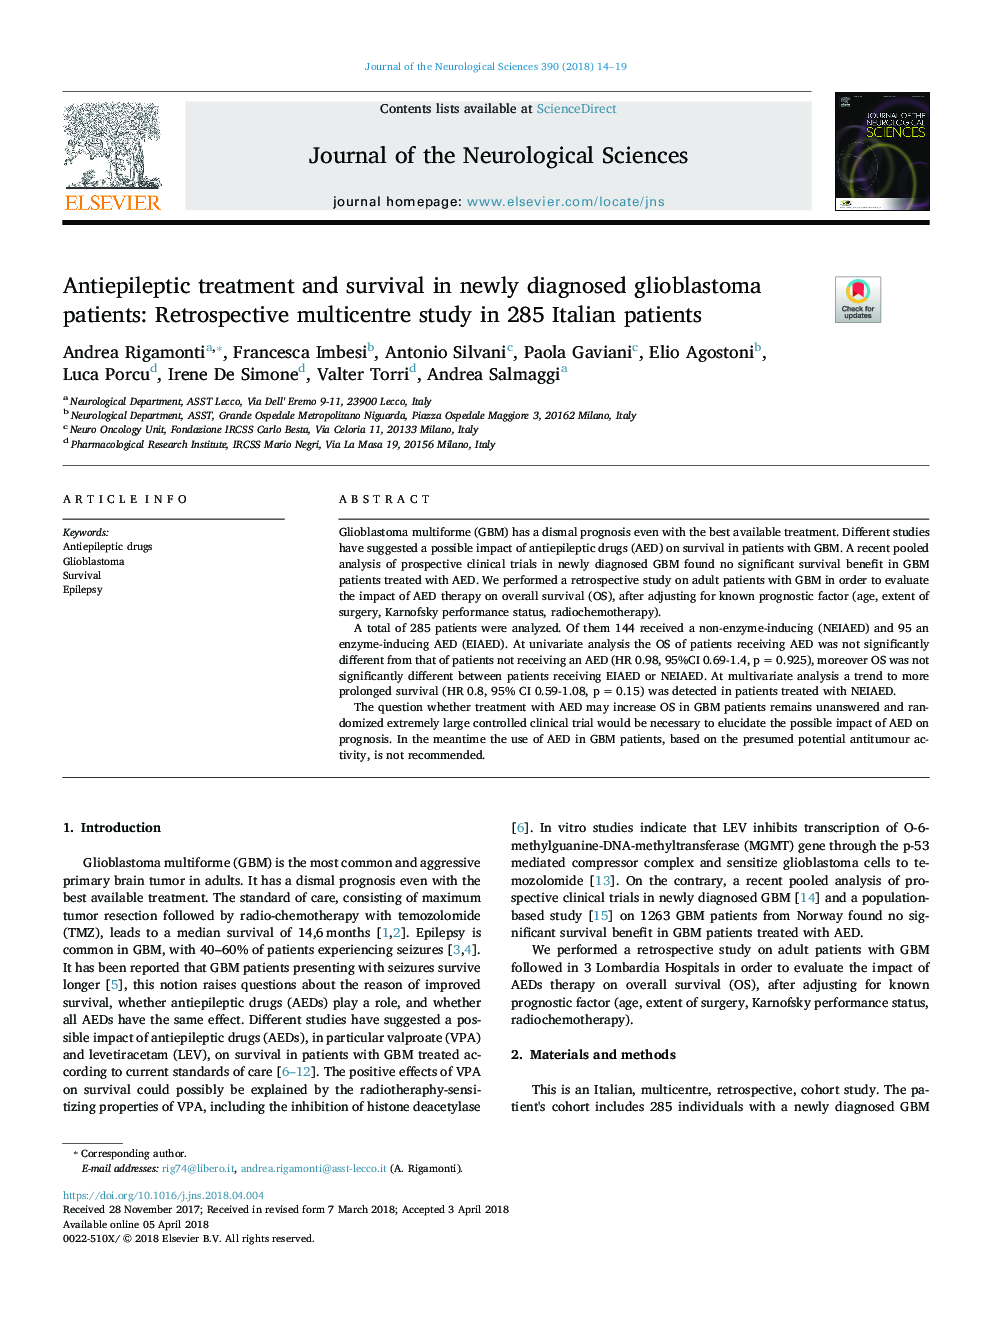 درمان ضد پوسیدگی و بقای آن در بیماران مبتلا به گلیوبلاستوما تازه تشخیص داده شده: مطالعه چند مرحله ای یکپارچه در 285 بیمار ایتالیایی 